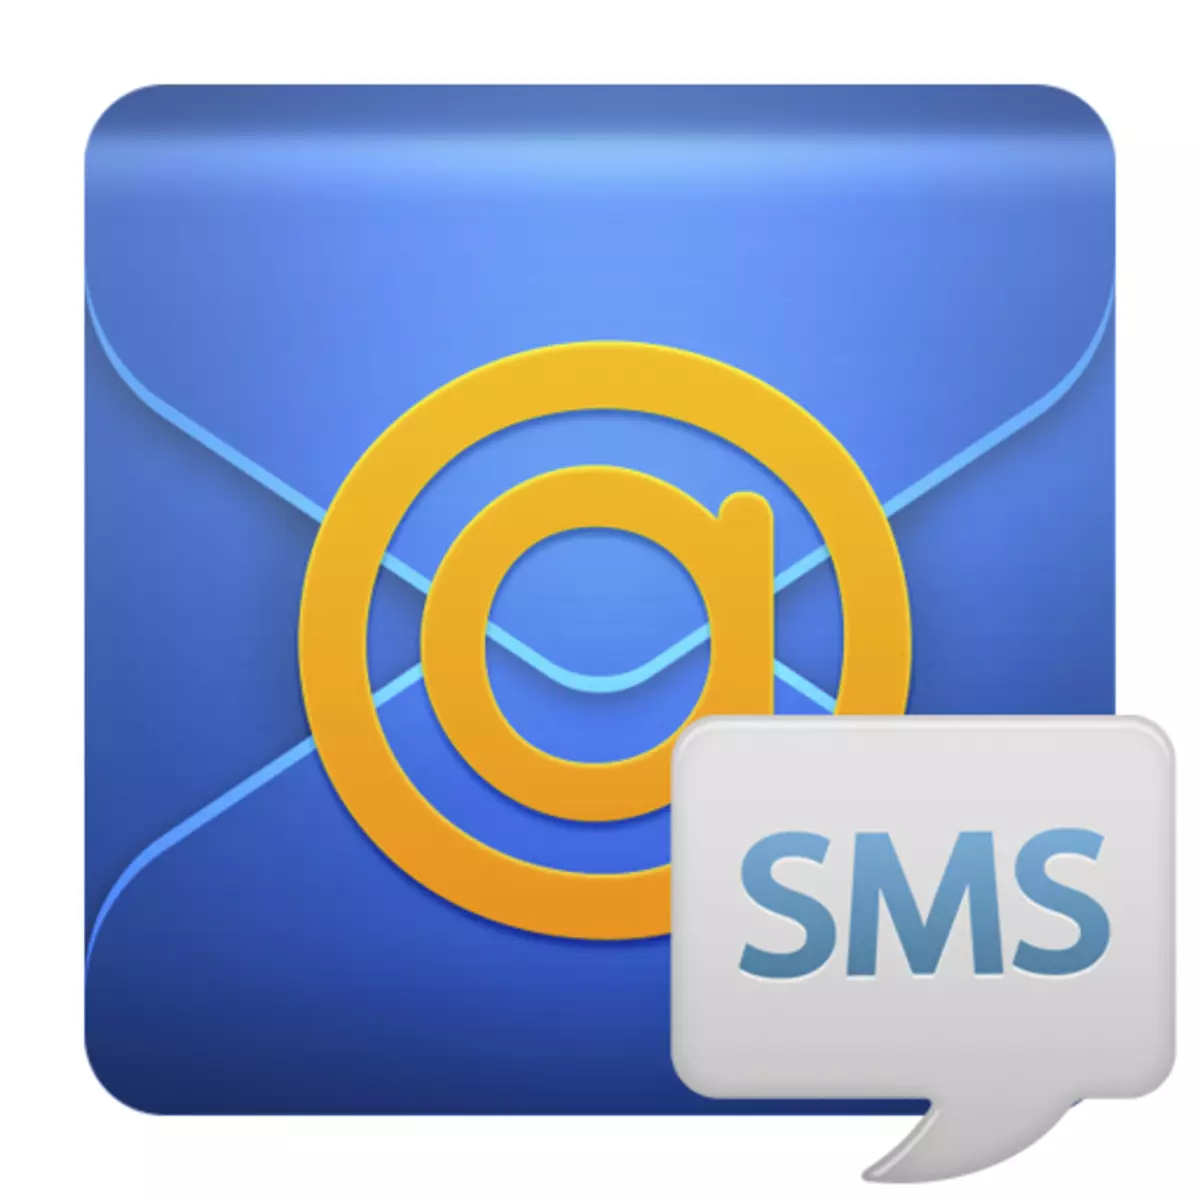 SMS-meddelanden om nytt mail i Mailru